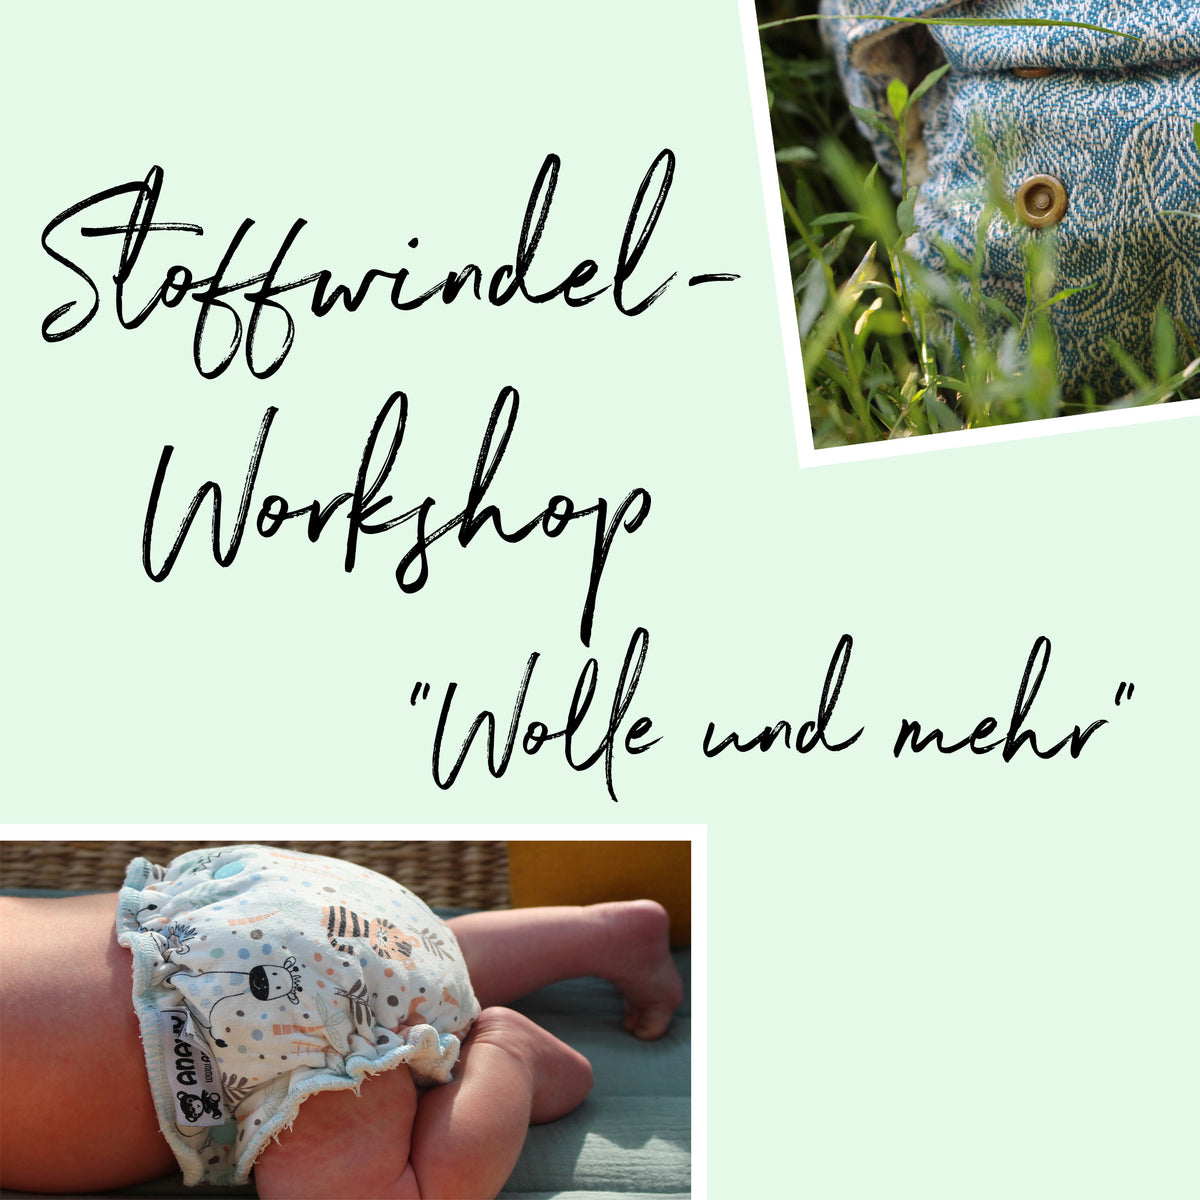 Stoffwindel-Workshop "Wolle und mehr"